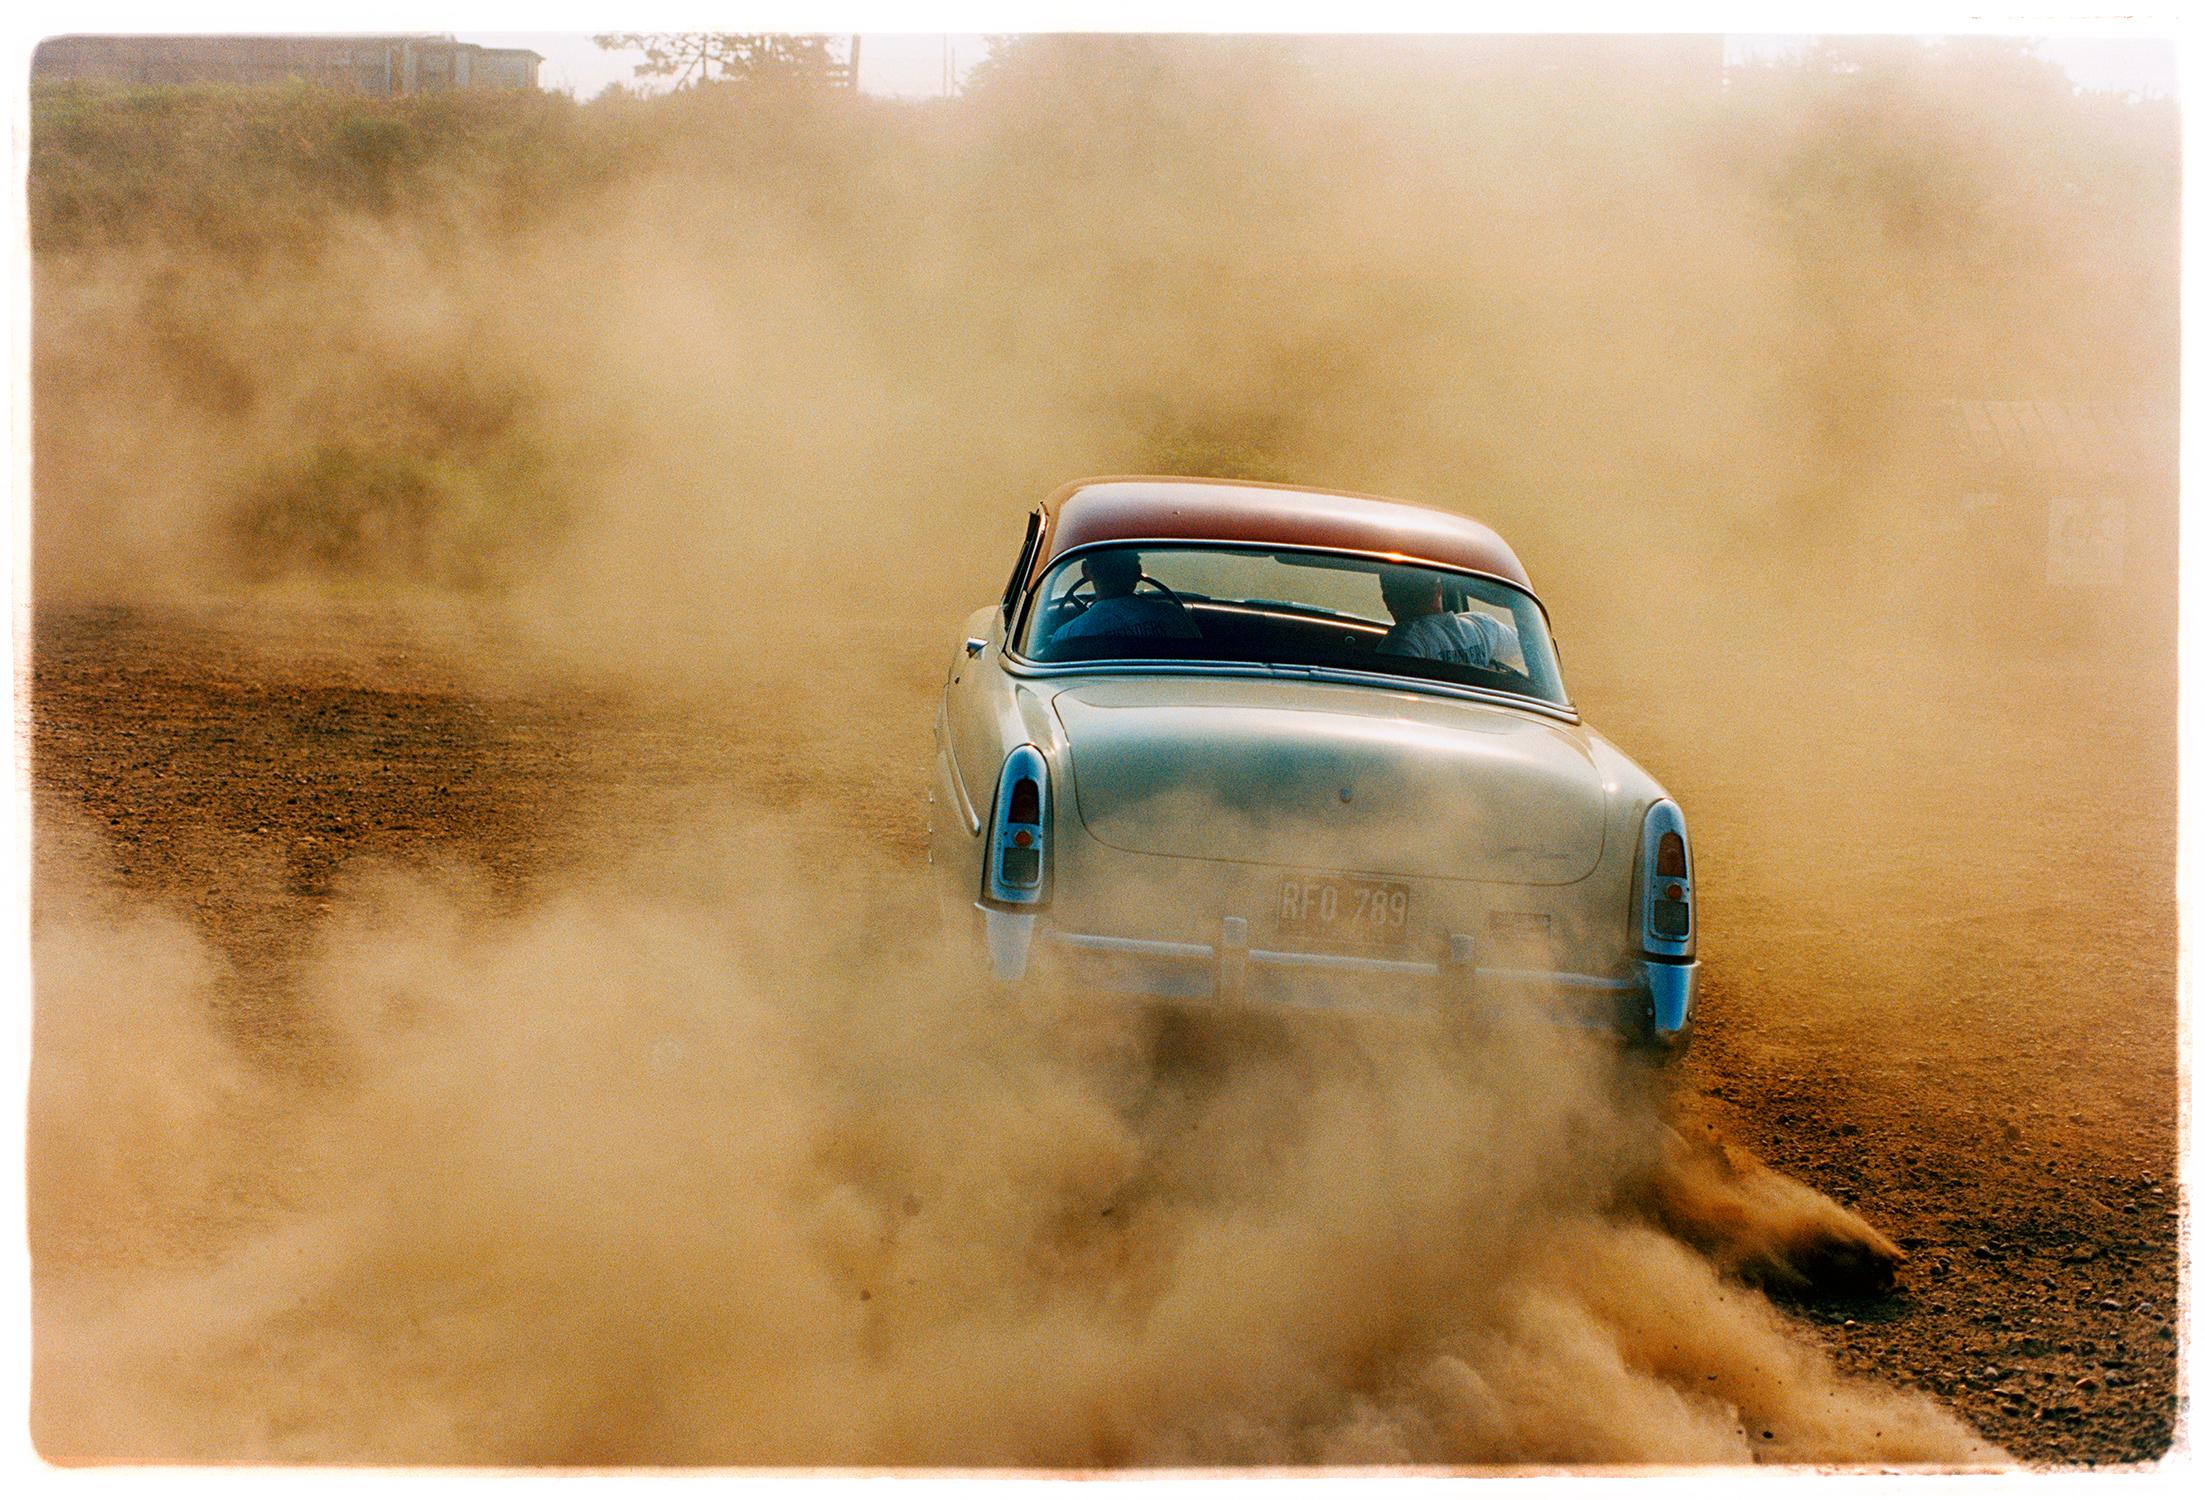 Richard Heeps Color Photograph – Mercury in the Dust, Hemsby, Norfolk – Auto auf einem Strand, Farbfotografie